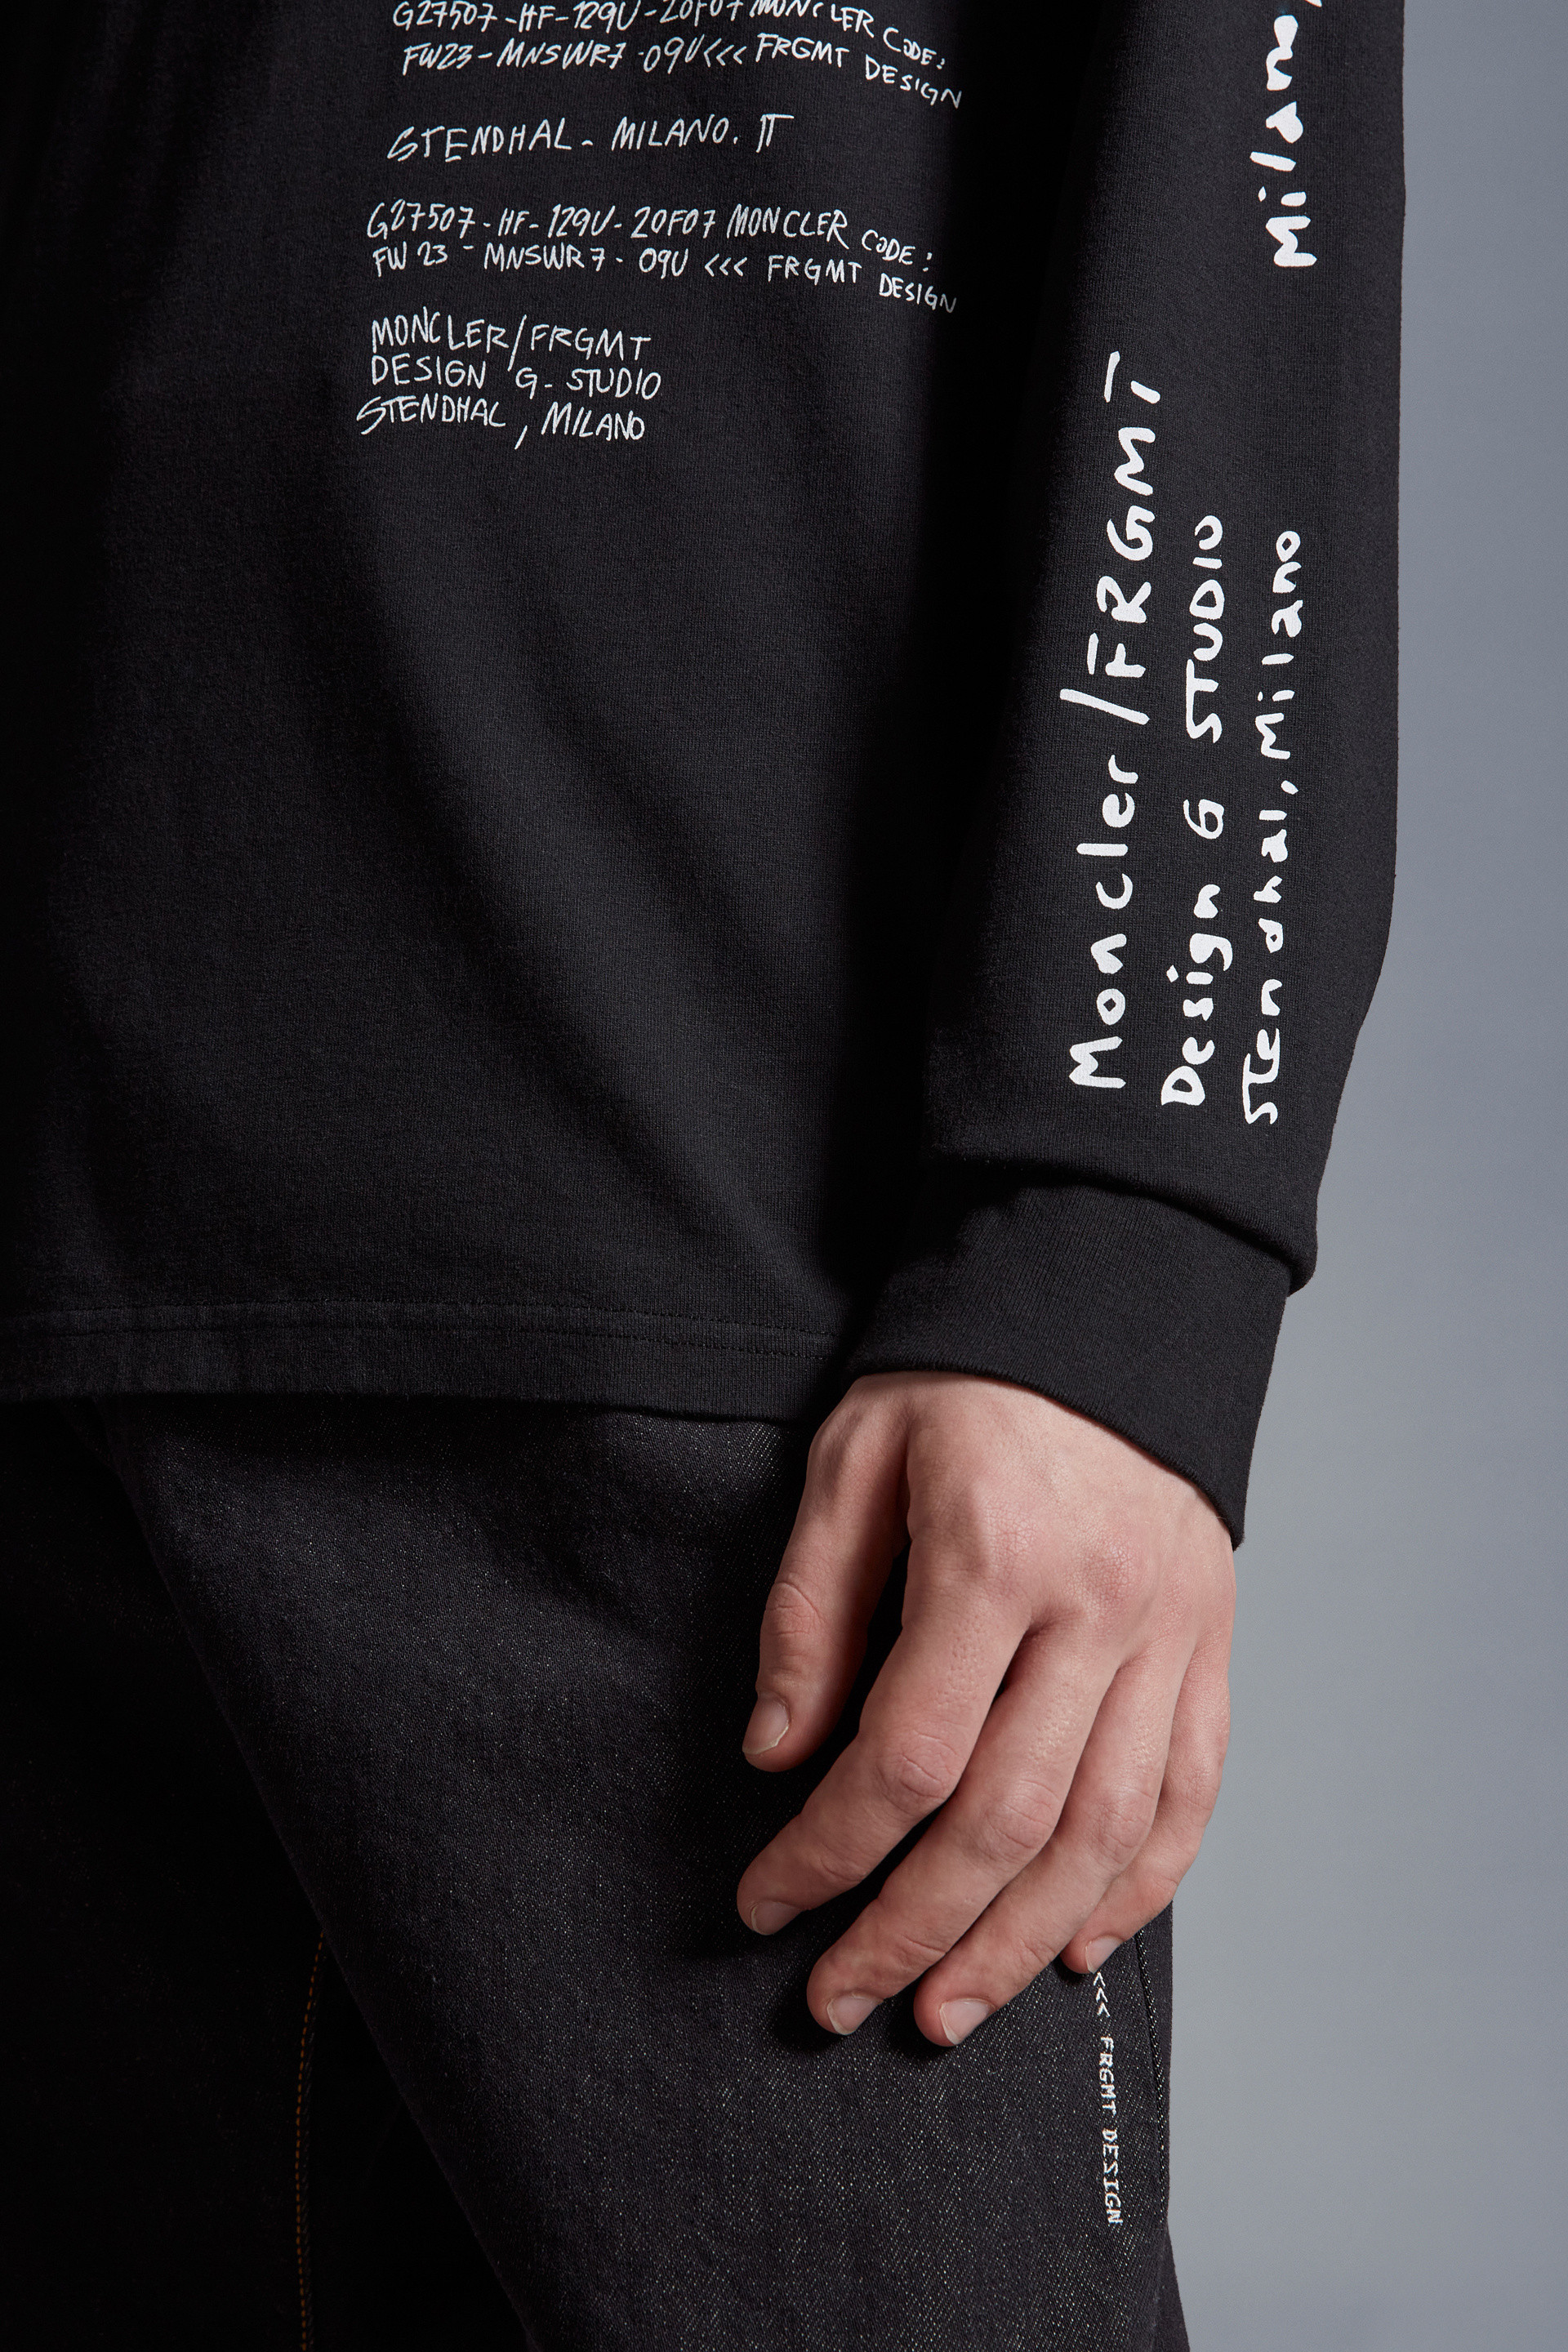 ブラック ロングスリーブTシャツ : Moncler x Frgmnt 向けの Genius